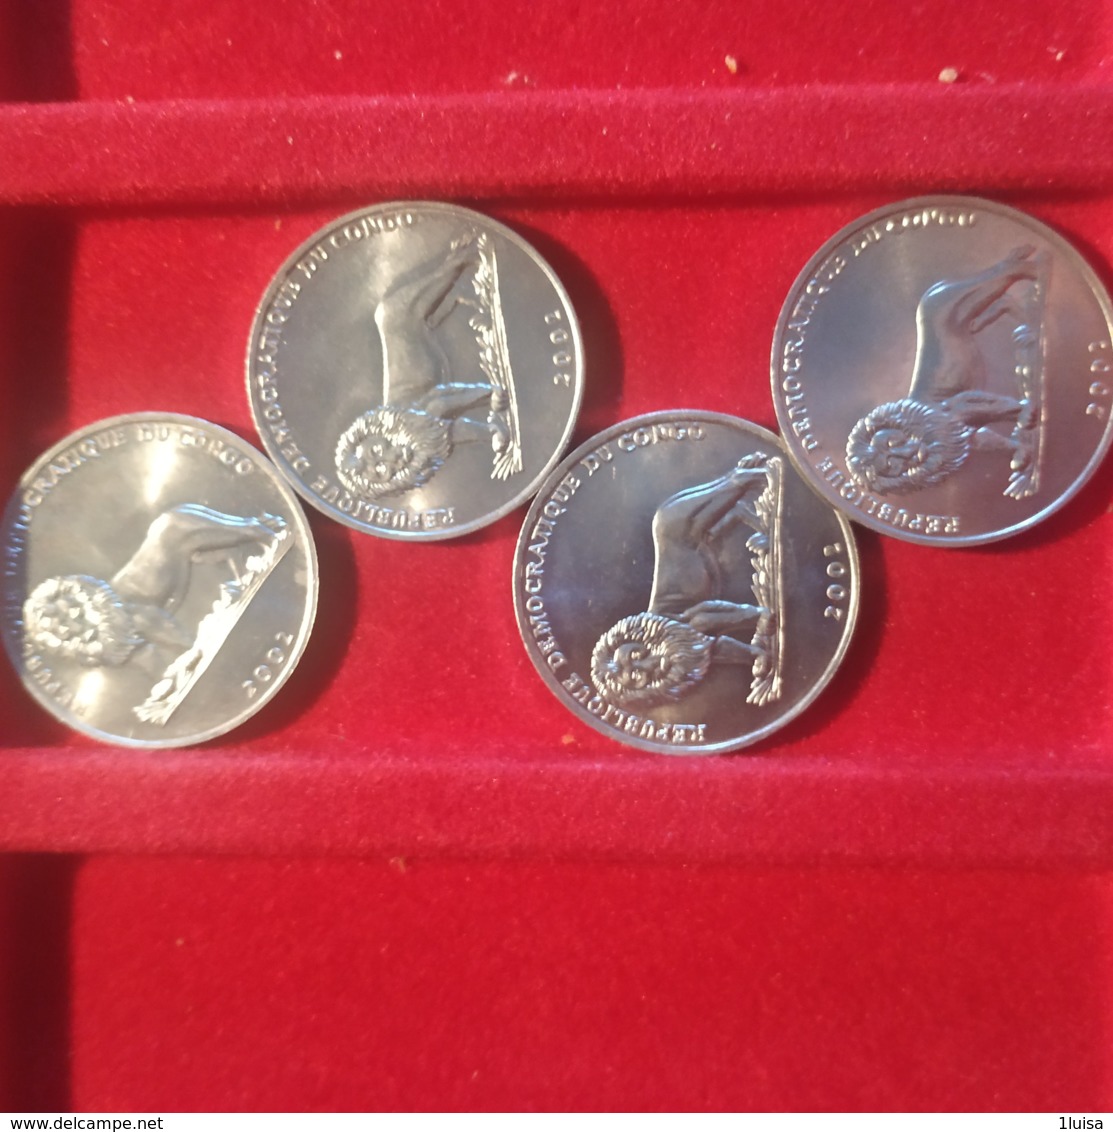 Congo Belga 50 Cents 2002 Per 4 - Kongo (Dem. Republik 1998)